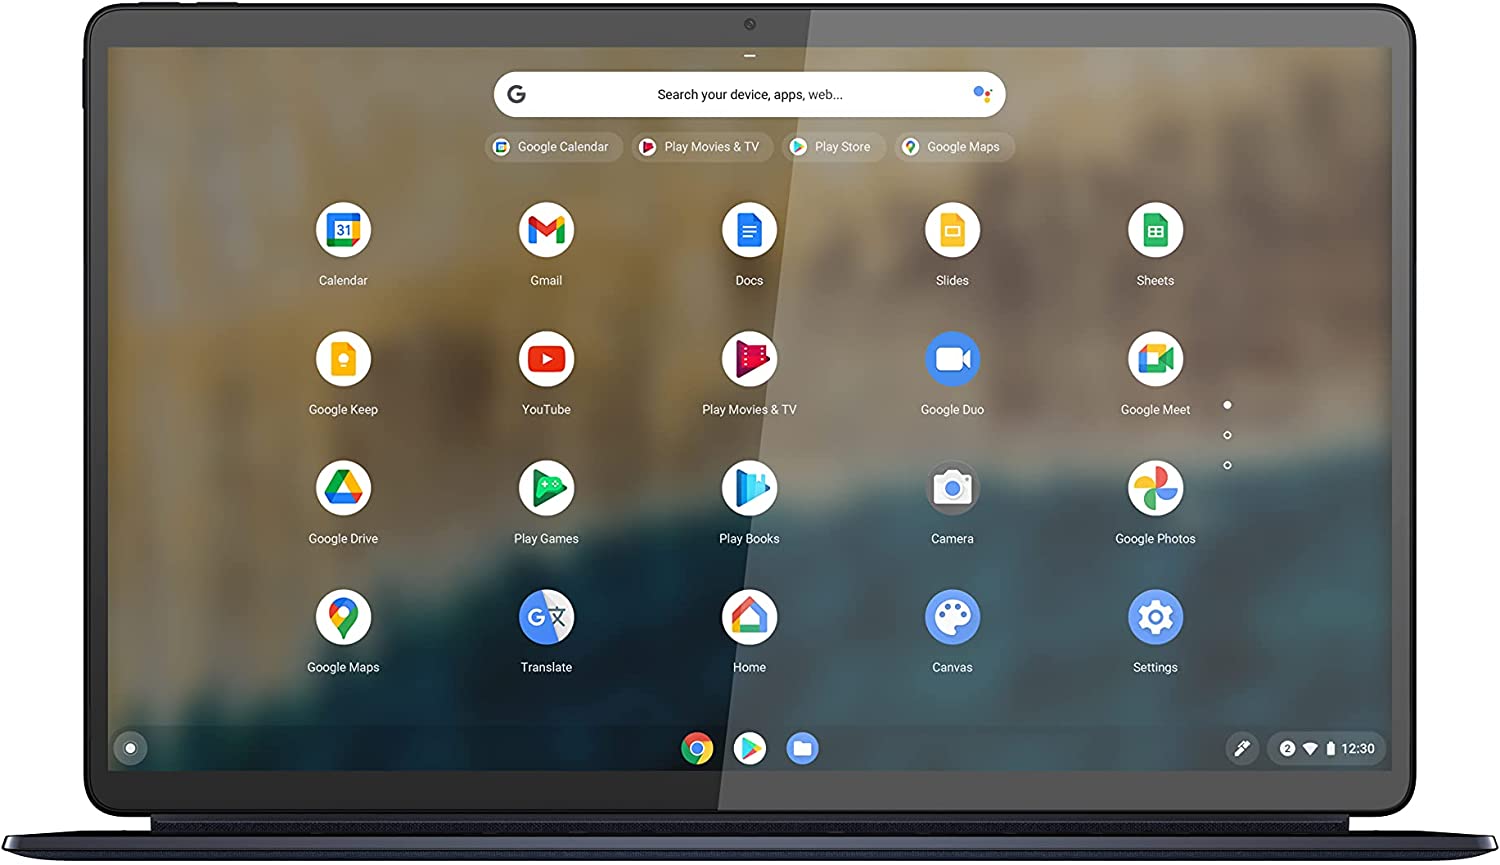 capturar pantalla en una Chromebook con Chrome OS